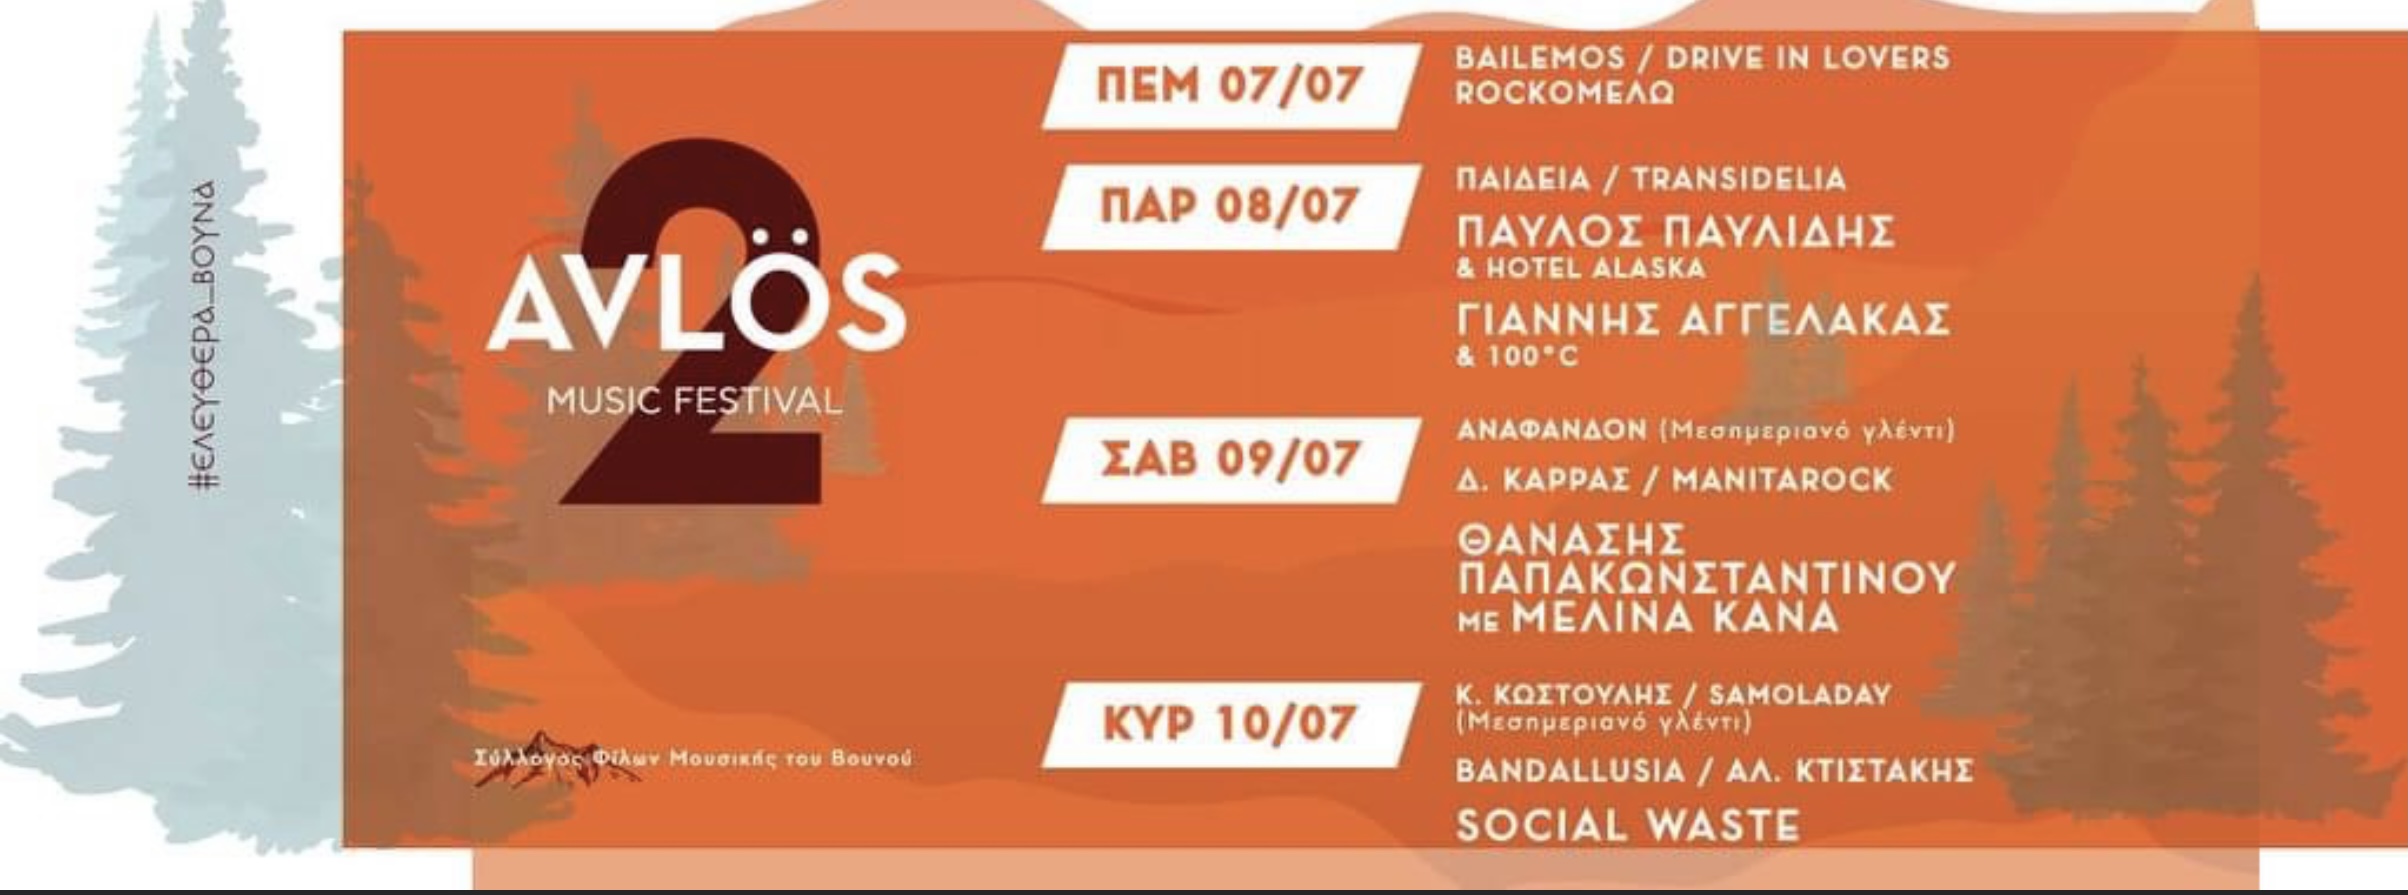 Το Avlos Music Festival επιστρέφει φέτος πιο δυναμικά!